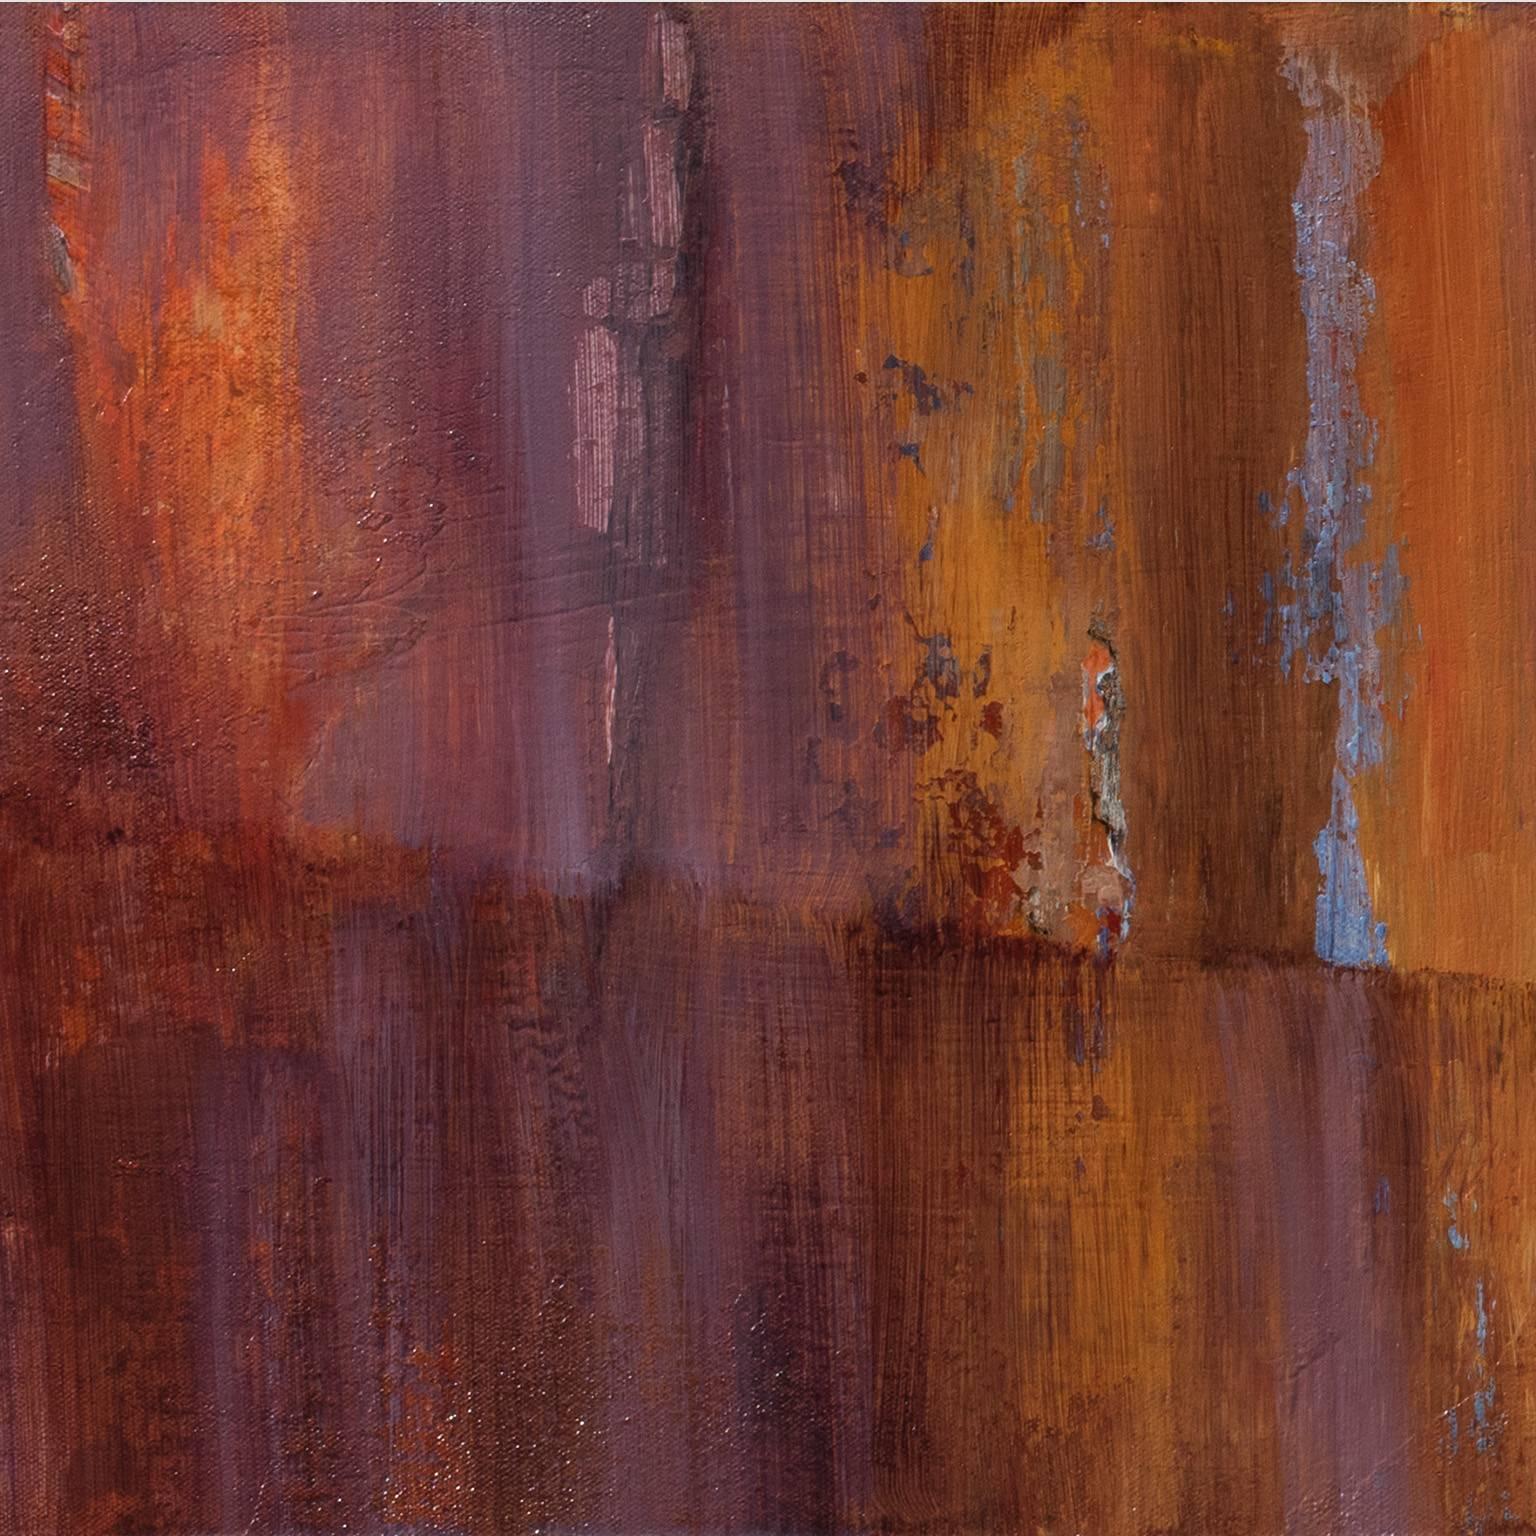 Peeping Tom - Langes abstraktes Landschafts-Ölgemälde mit Orange und Rostfarben – Painting von Andrei Petrov